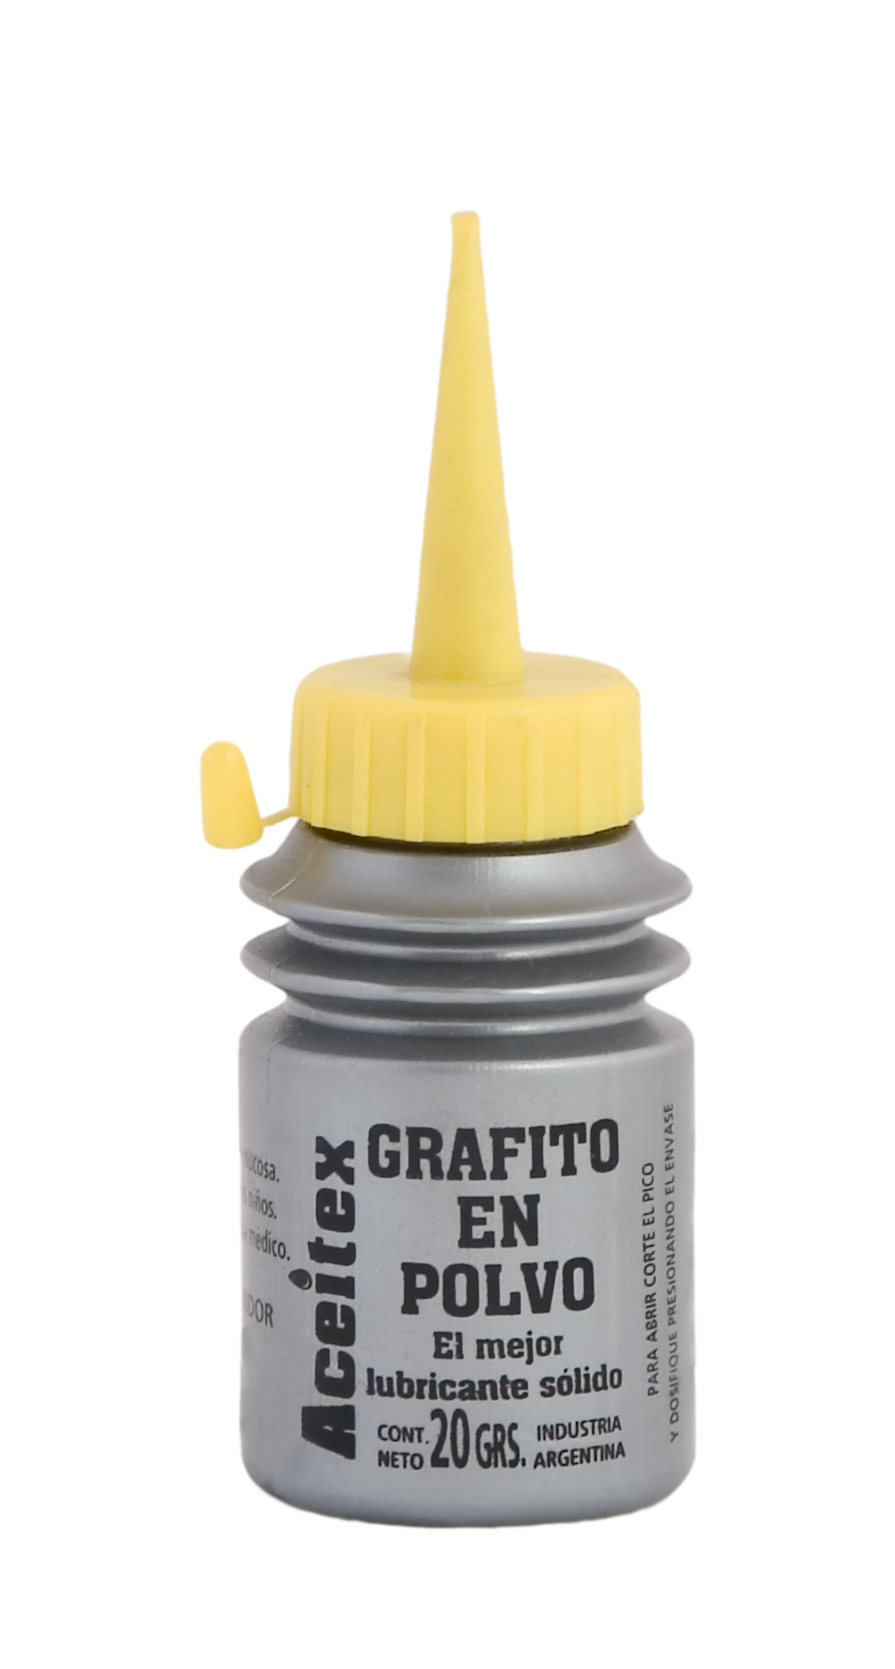  Polvo de grafito puro microfino de 1 cuarto de galón, excelente  lubricante de grafito en polvo seco para cerraduras, rodamientos, carretes  de pesca, etc. También mejora la resistencia a la corrosión 